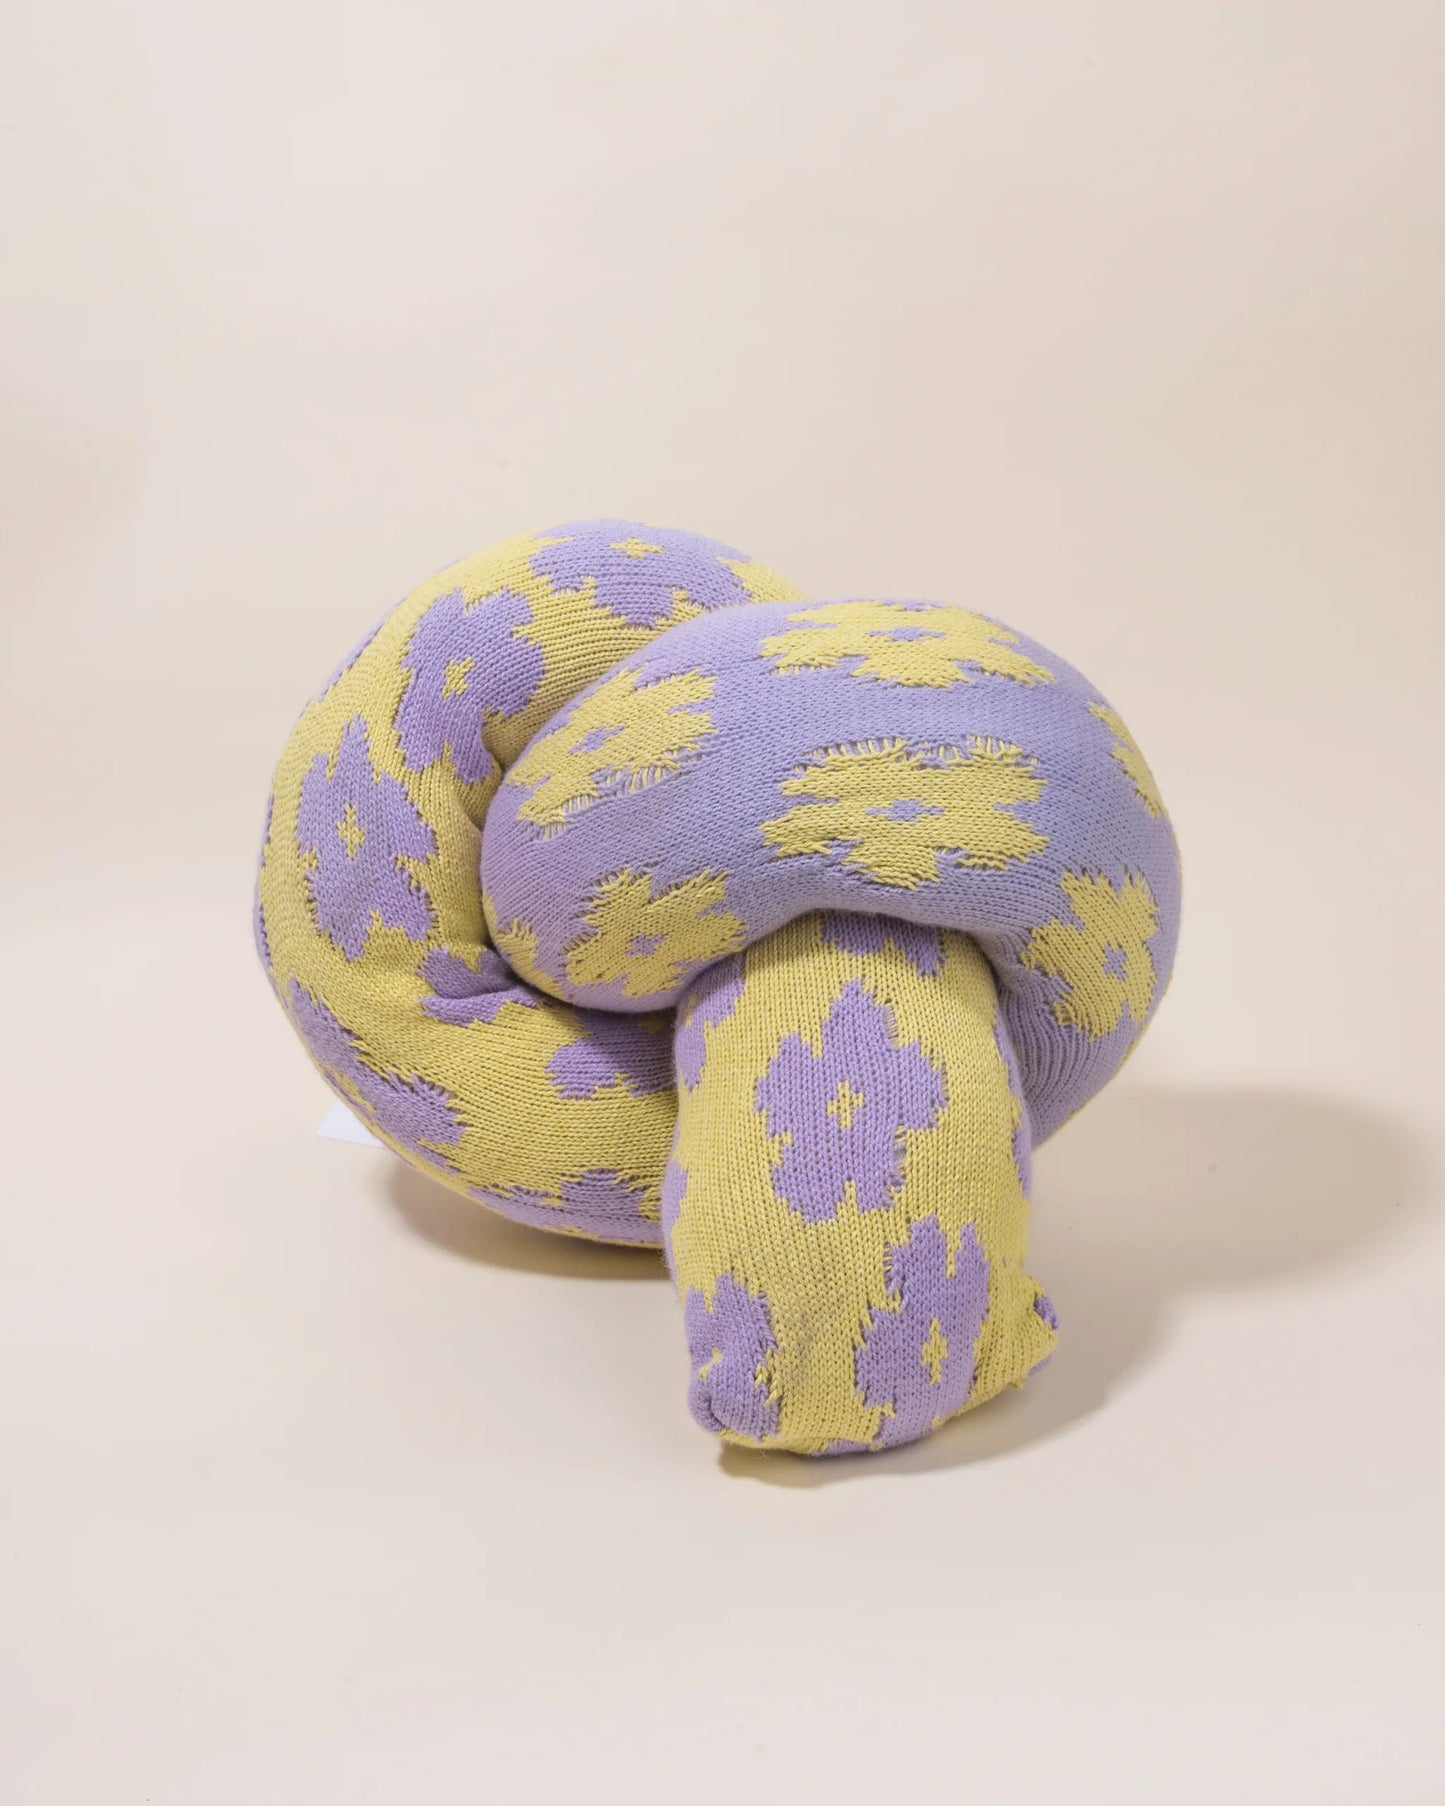 Mini Flower Pillow - Lavender & Olive